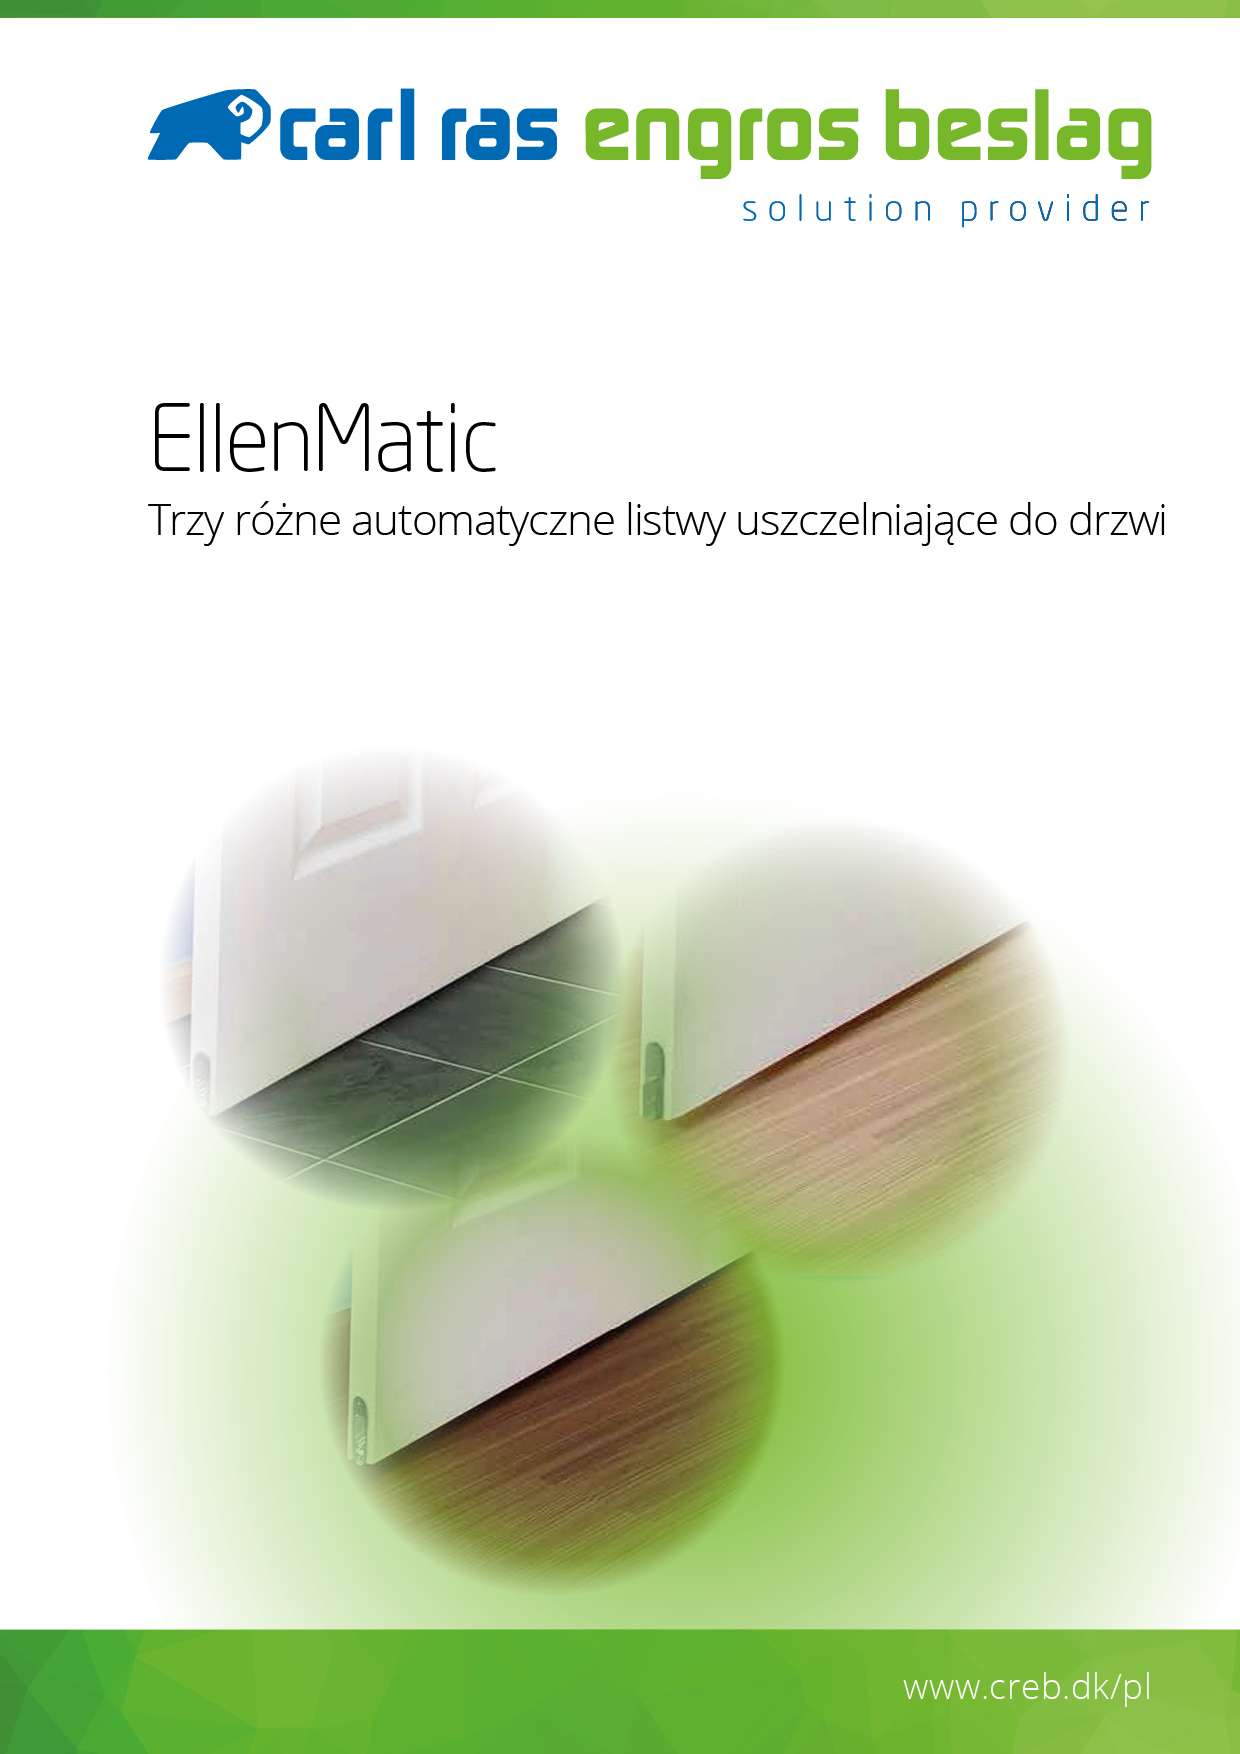 EllenMatic - Listwy uszczelniające